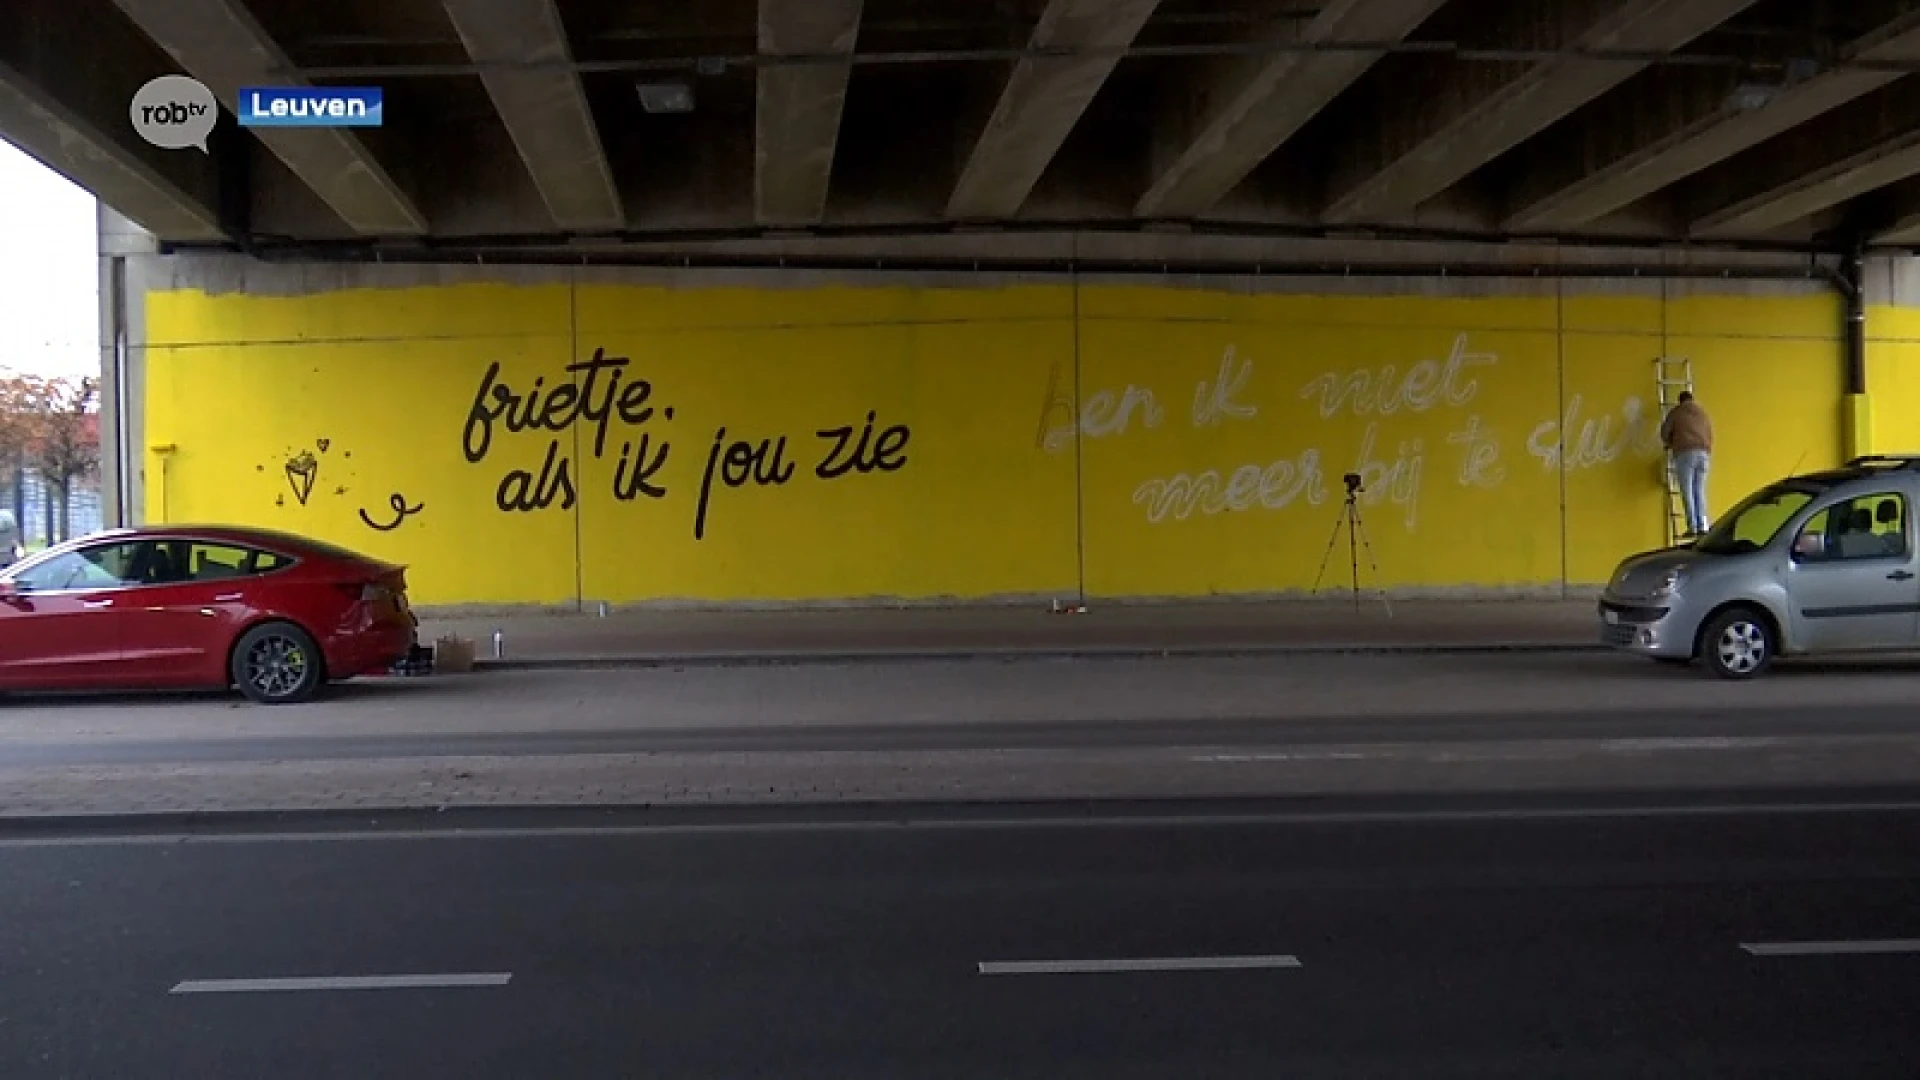 Knalgele muurschildering in Leuven om Belgische frietjes in de kijker te zetten